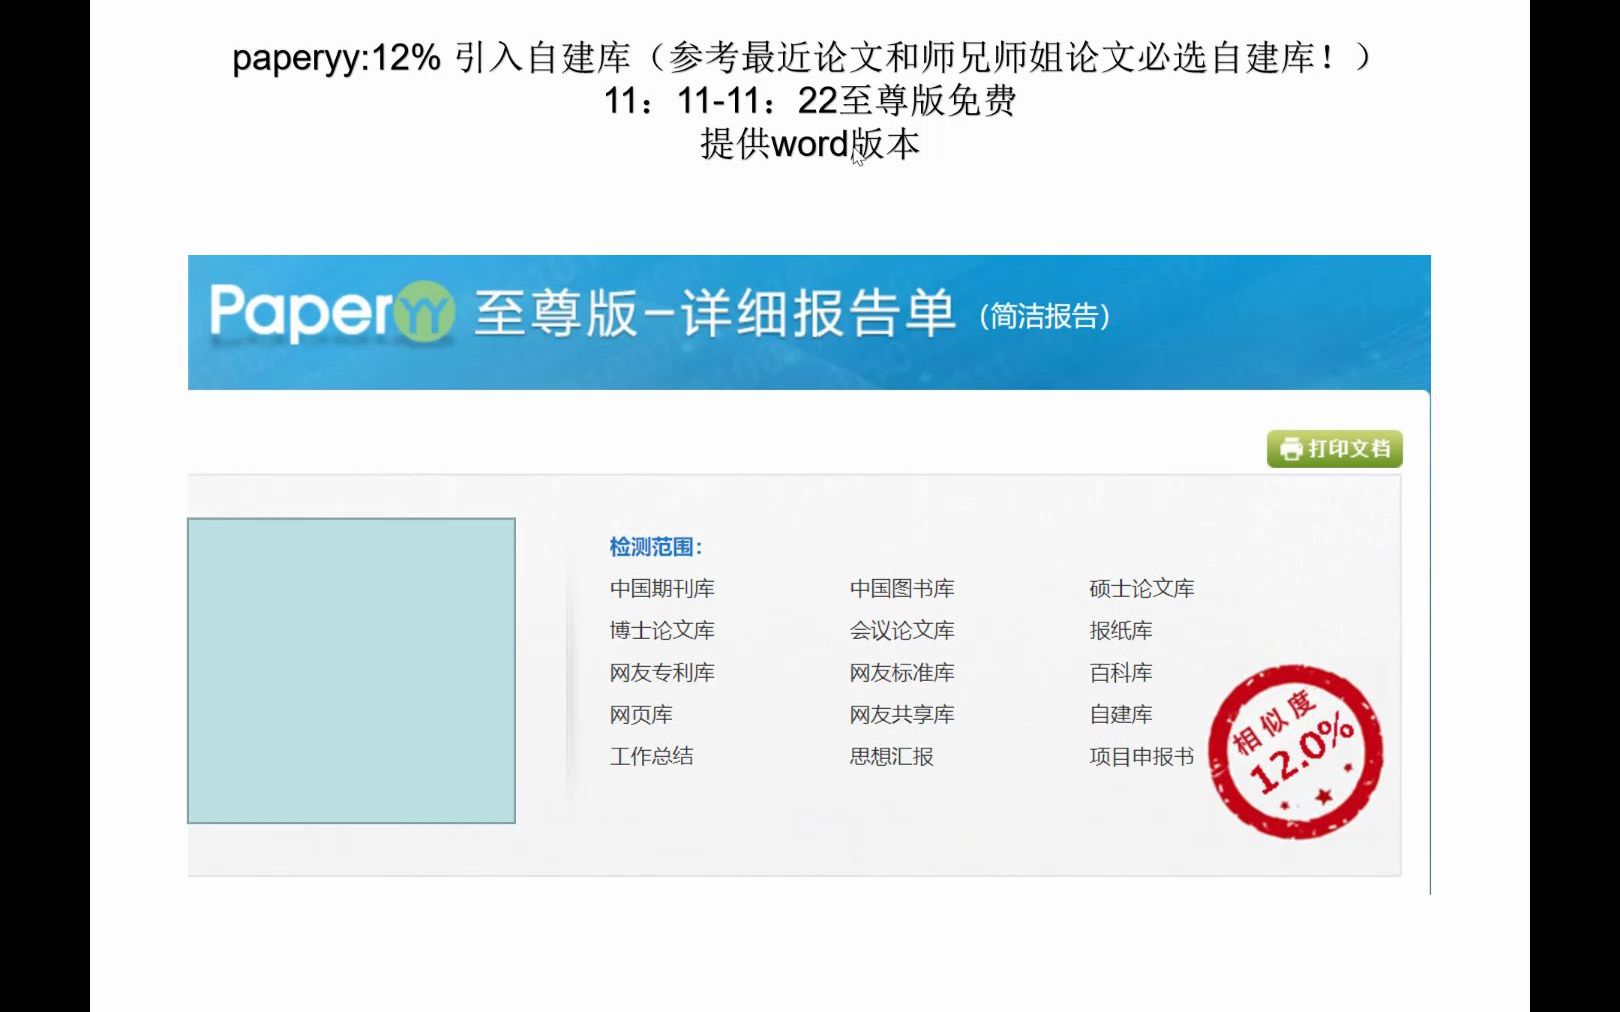 中国知网向个人提供查重服务，定价1.5元/千字__财经头条